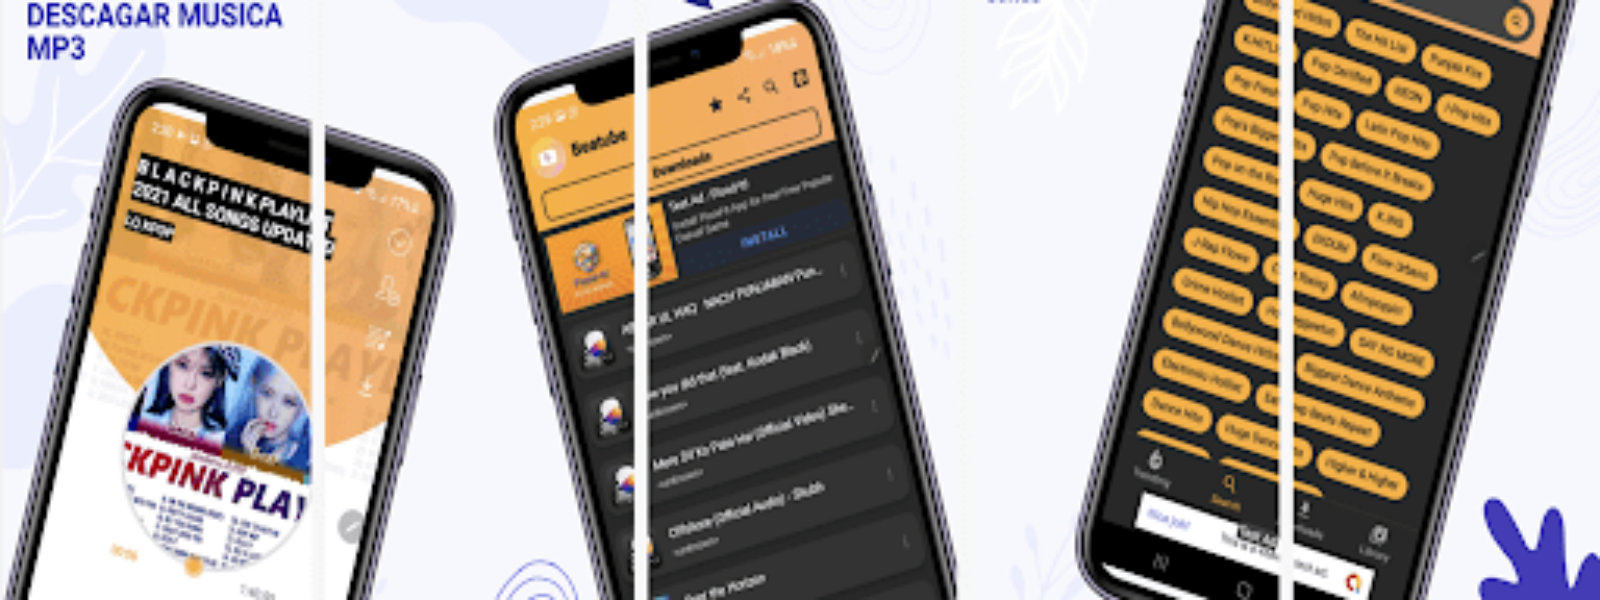 Beatube – Descargar Musica Mp3 pentru Android | iOS